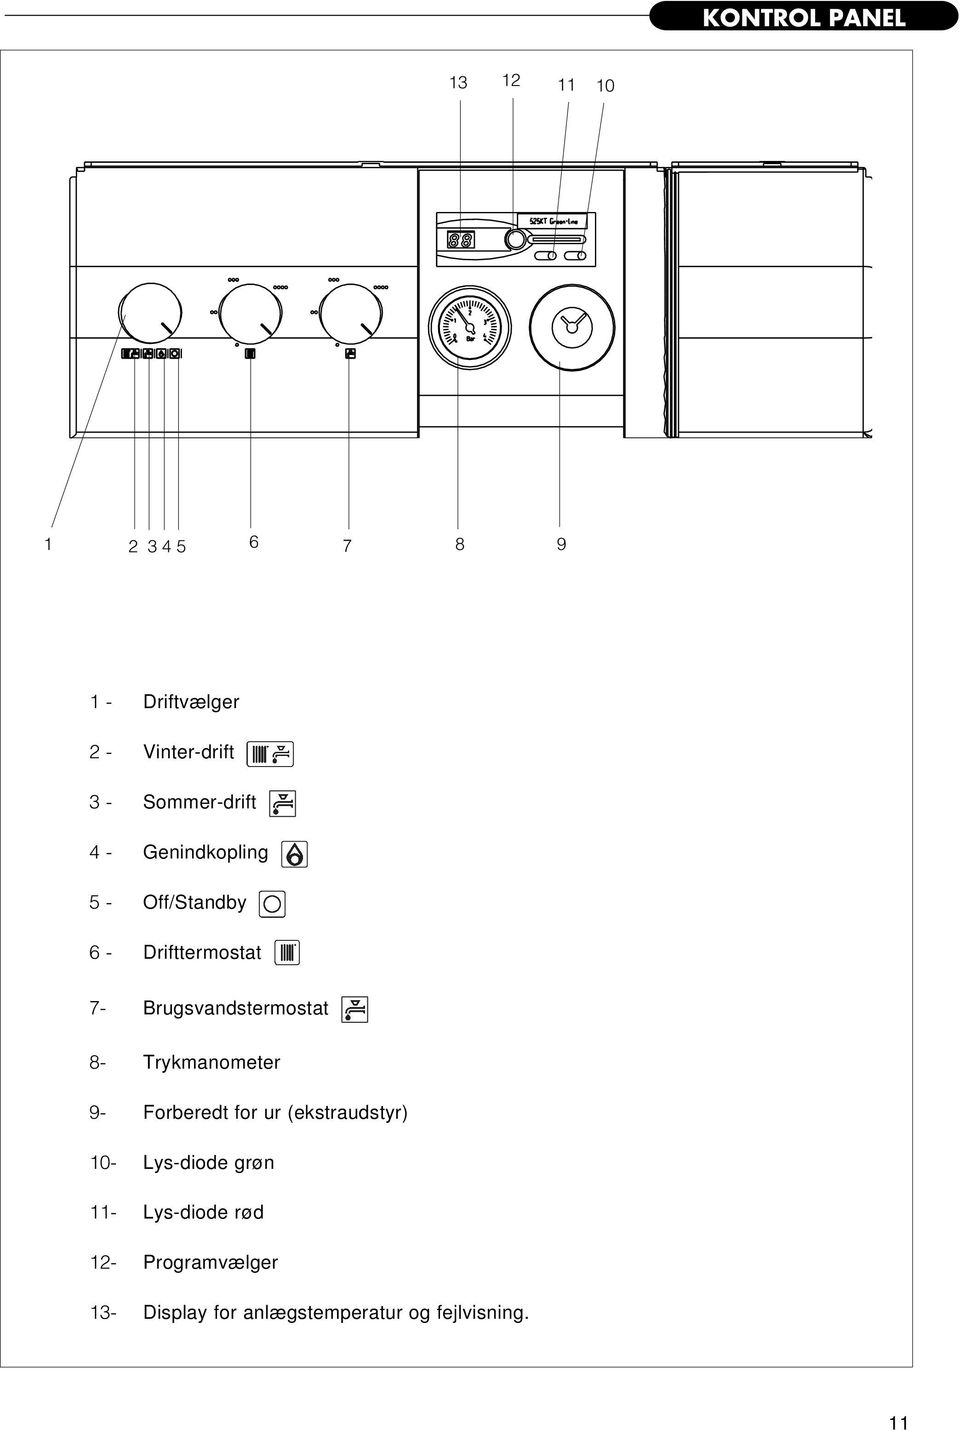 Brugsvandstermostat 8- Trykmanometer 9- Forberedt for ur (ekstraudstyr) 10-